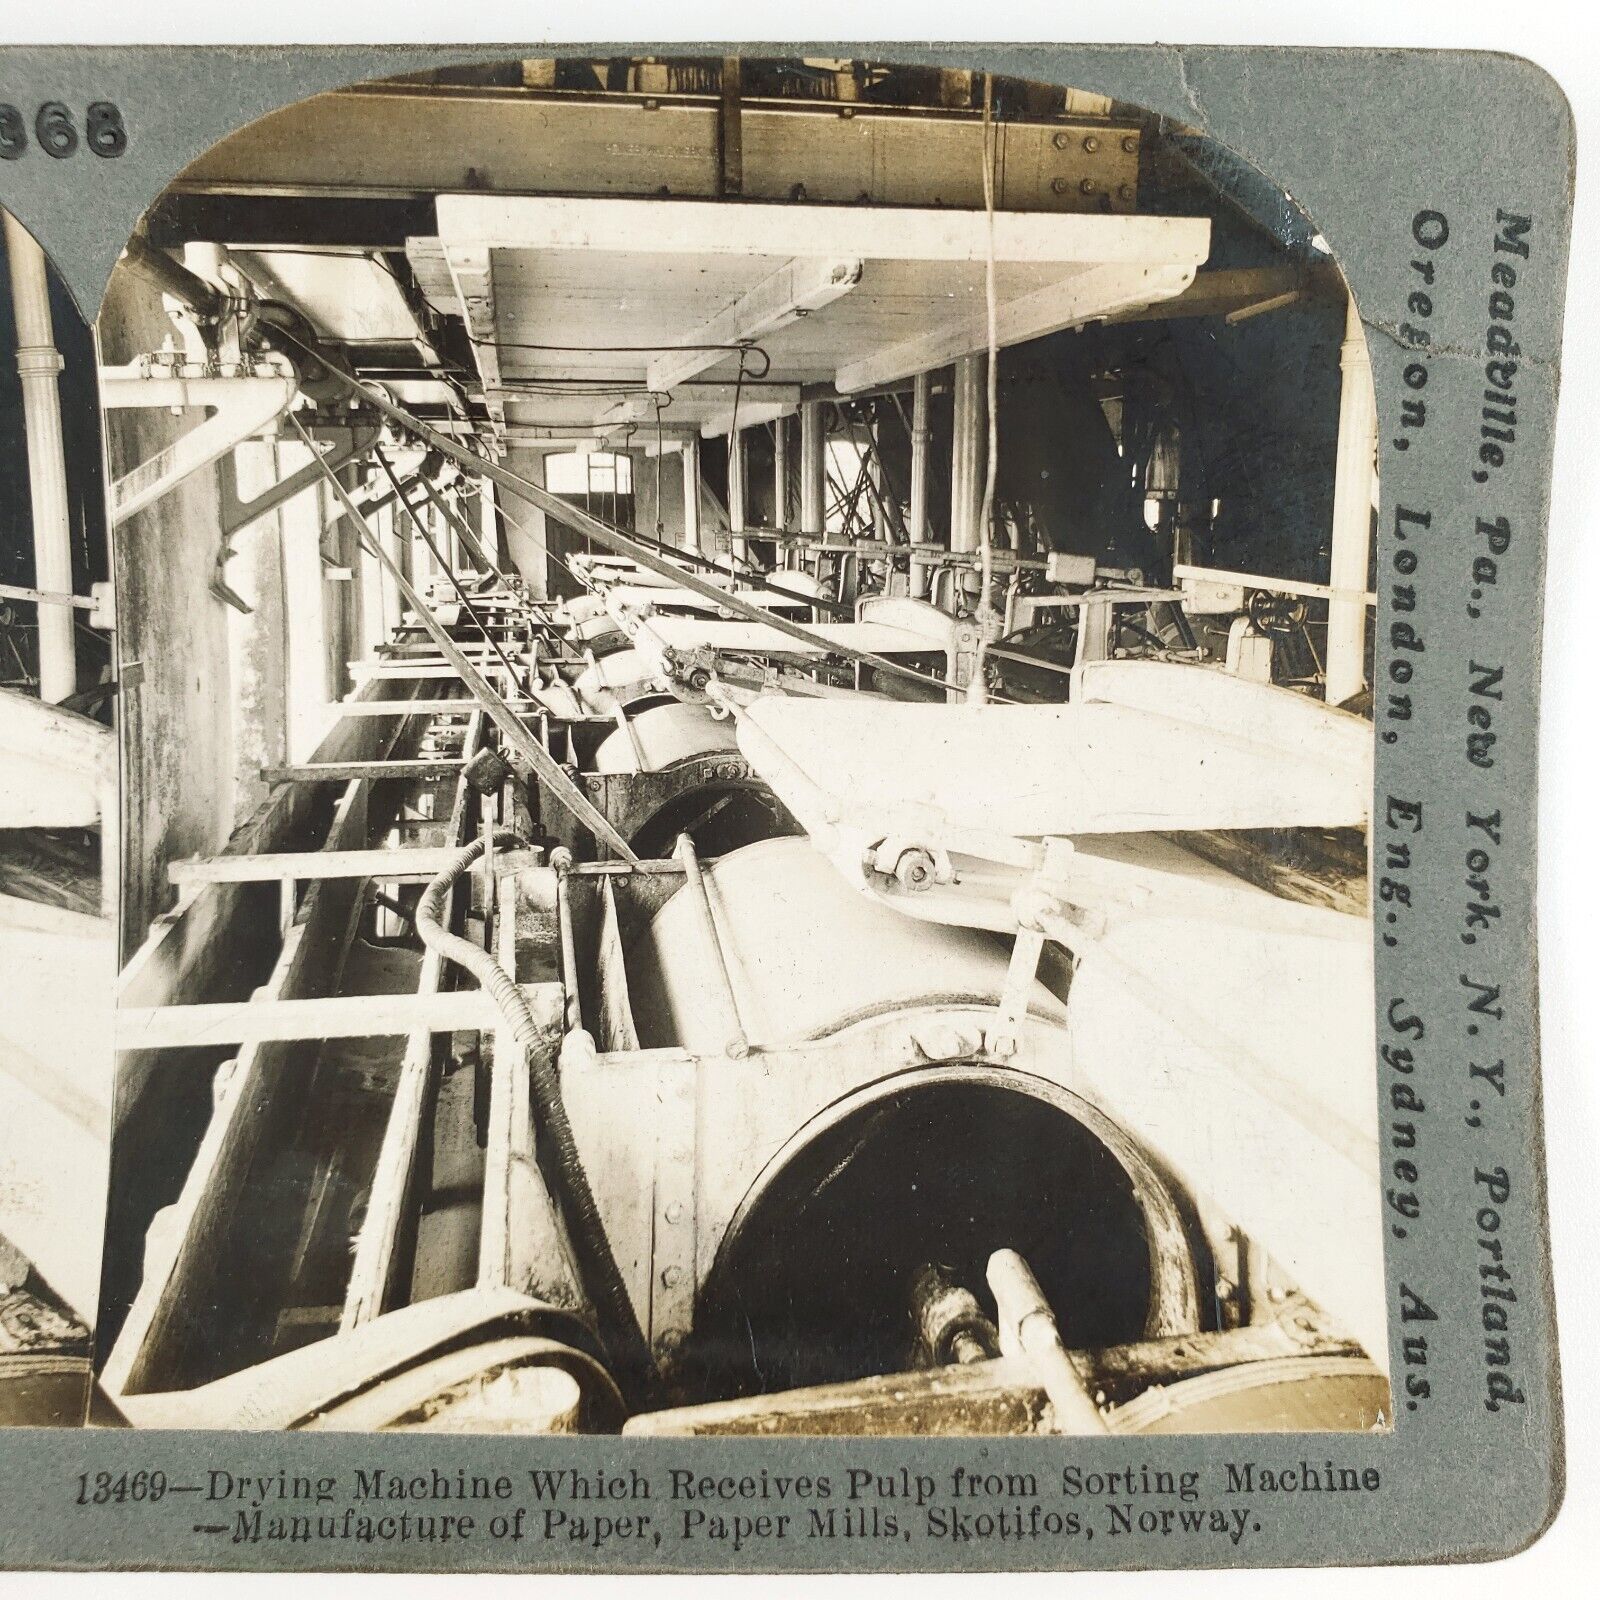 Skotfoss Bruk Paper Mill Stereoview c1906 Norway Drying Machine Factory H768